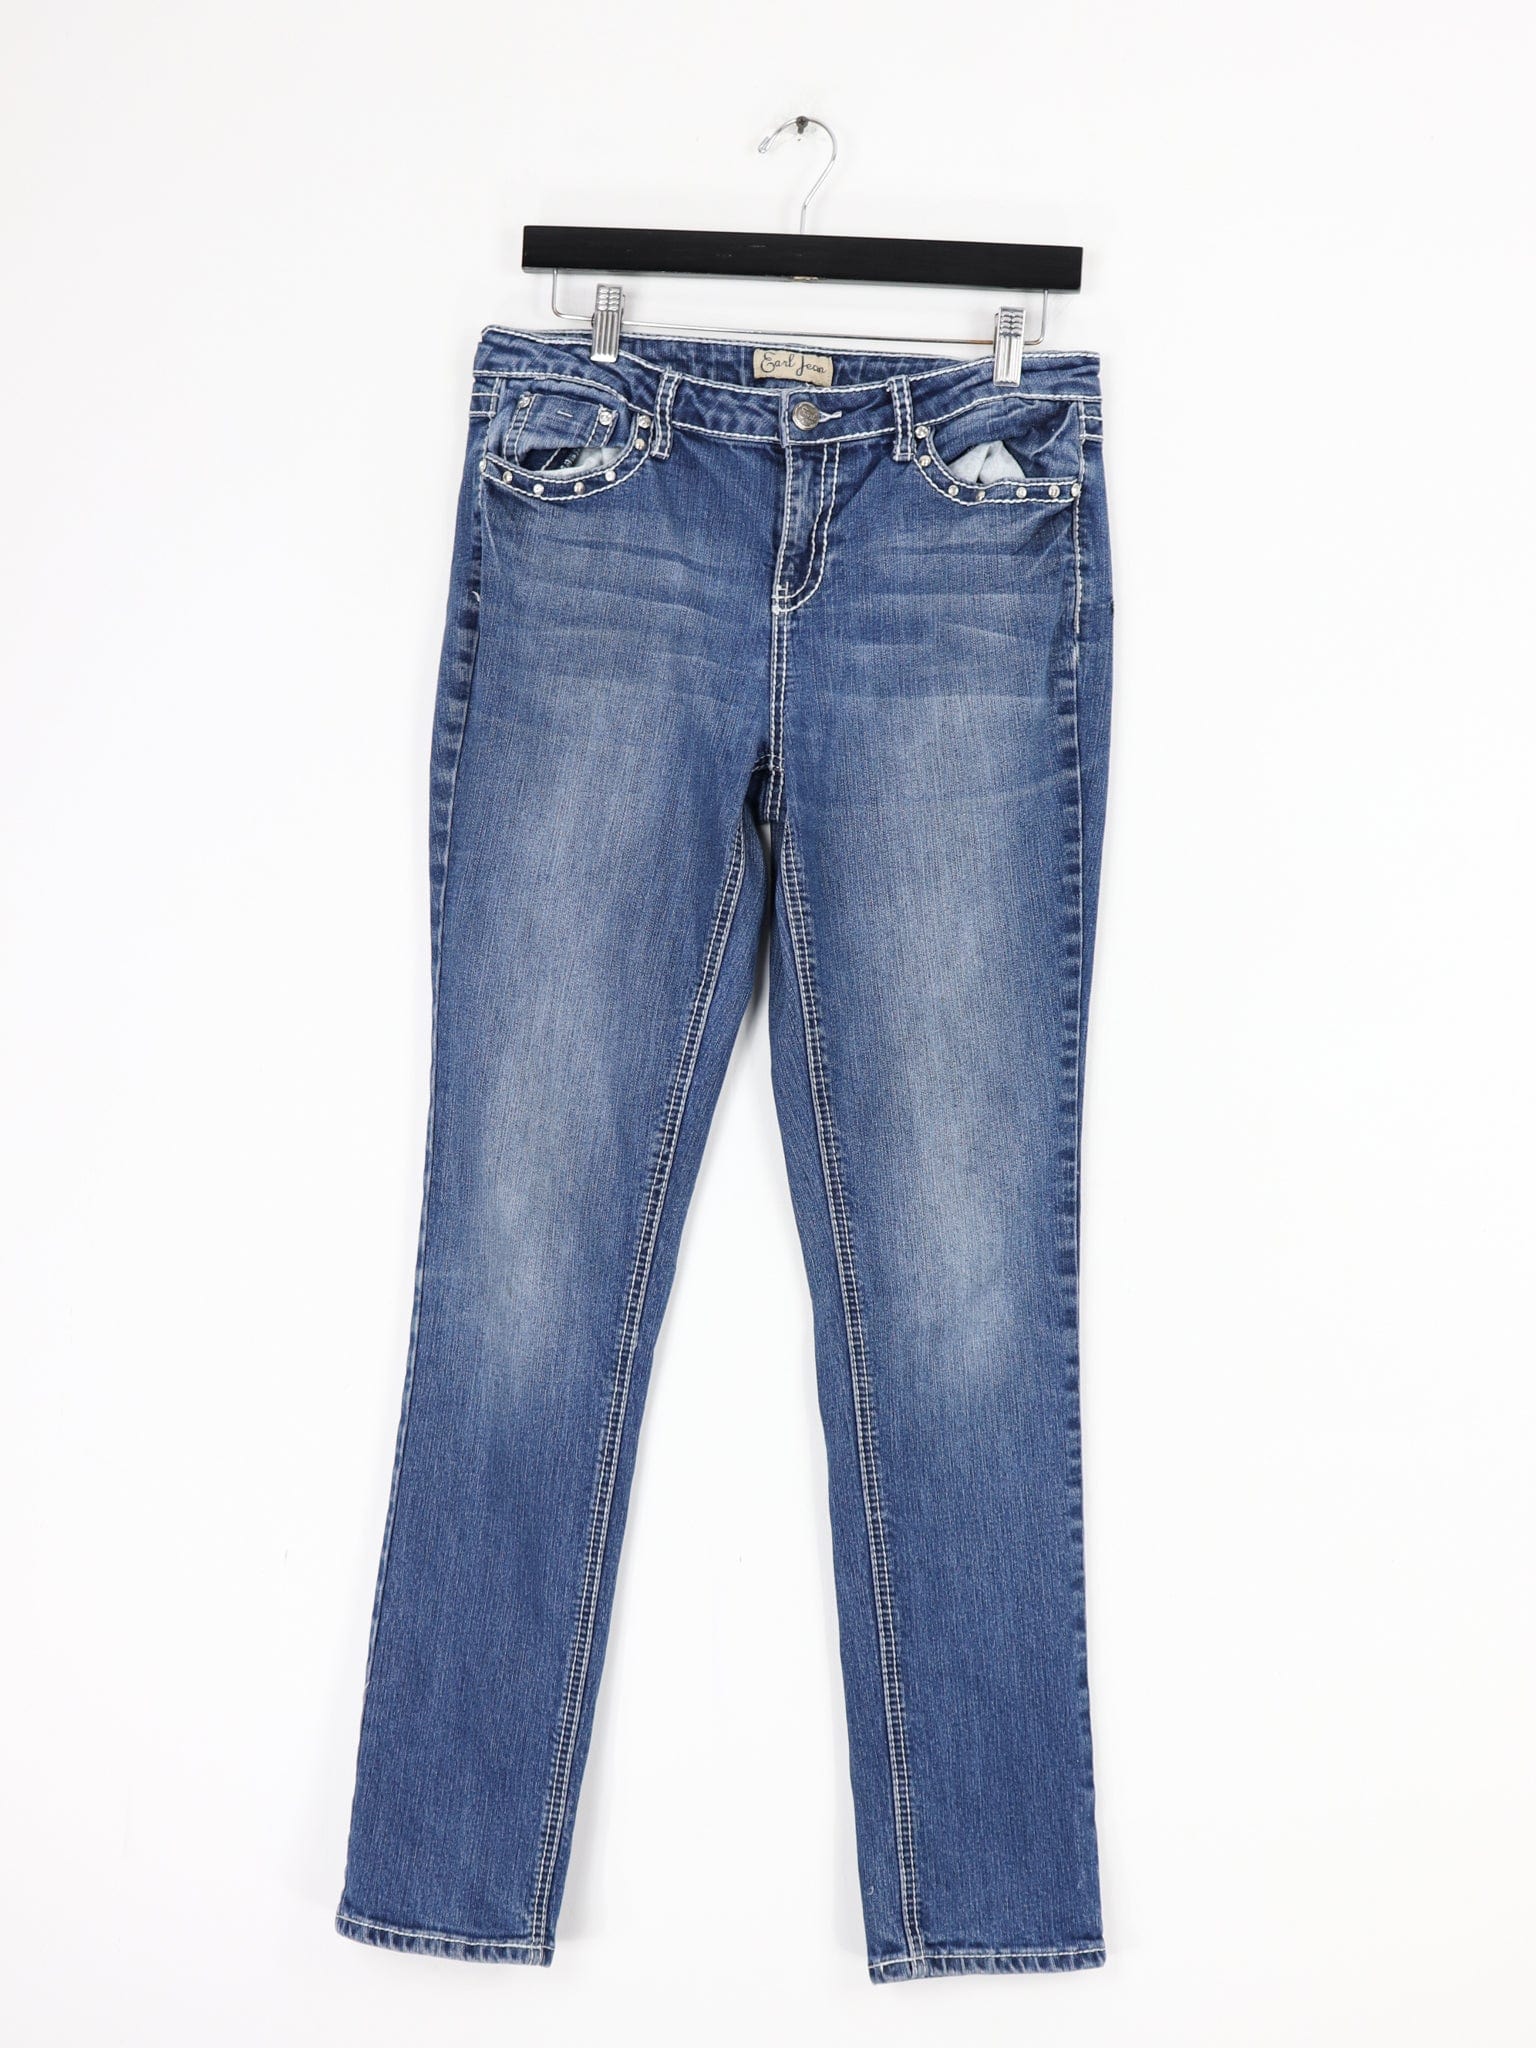 Stylish Earl Women's Jeans - Size 12